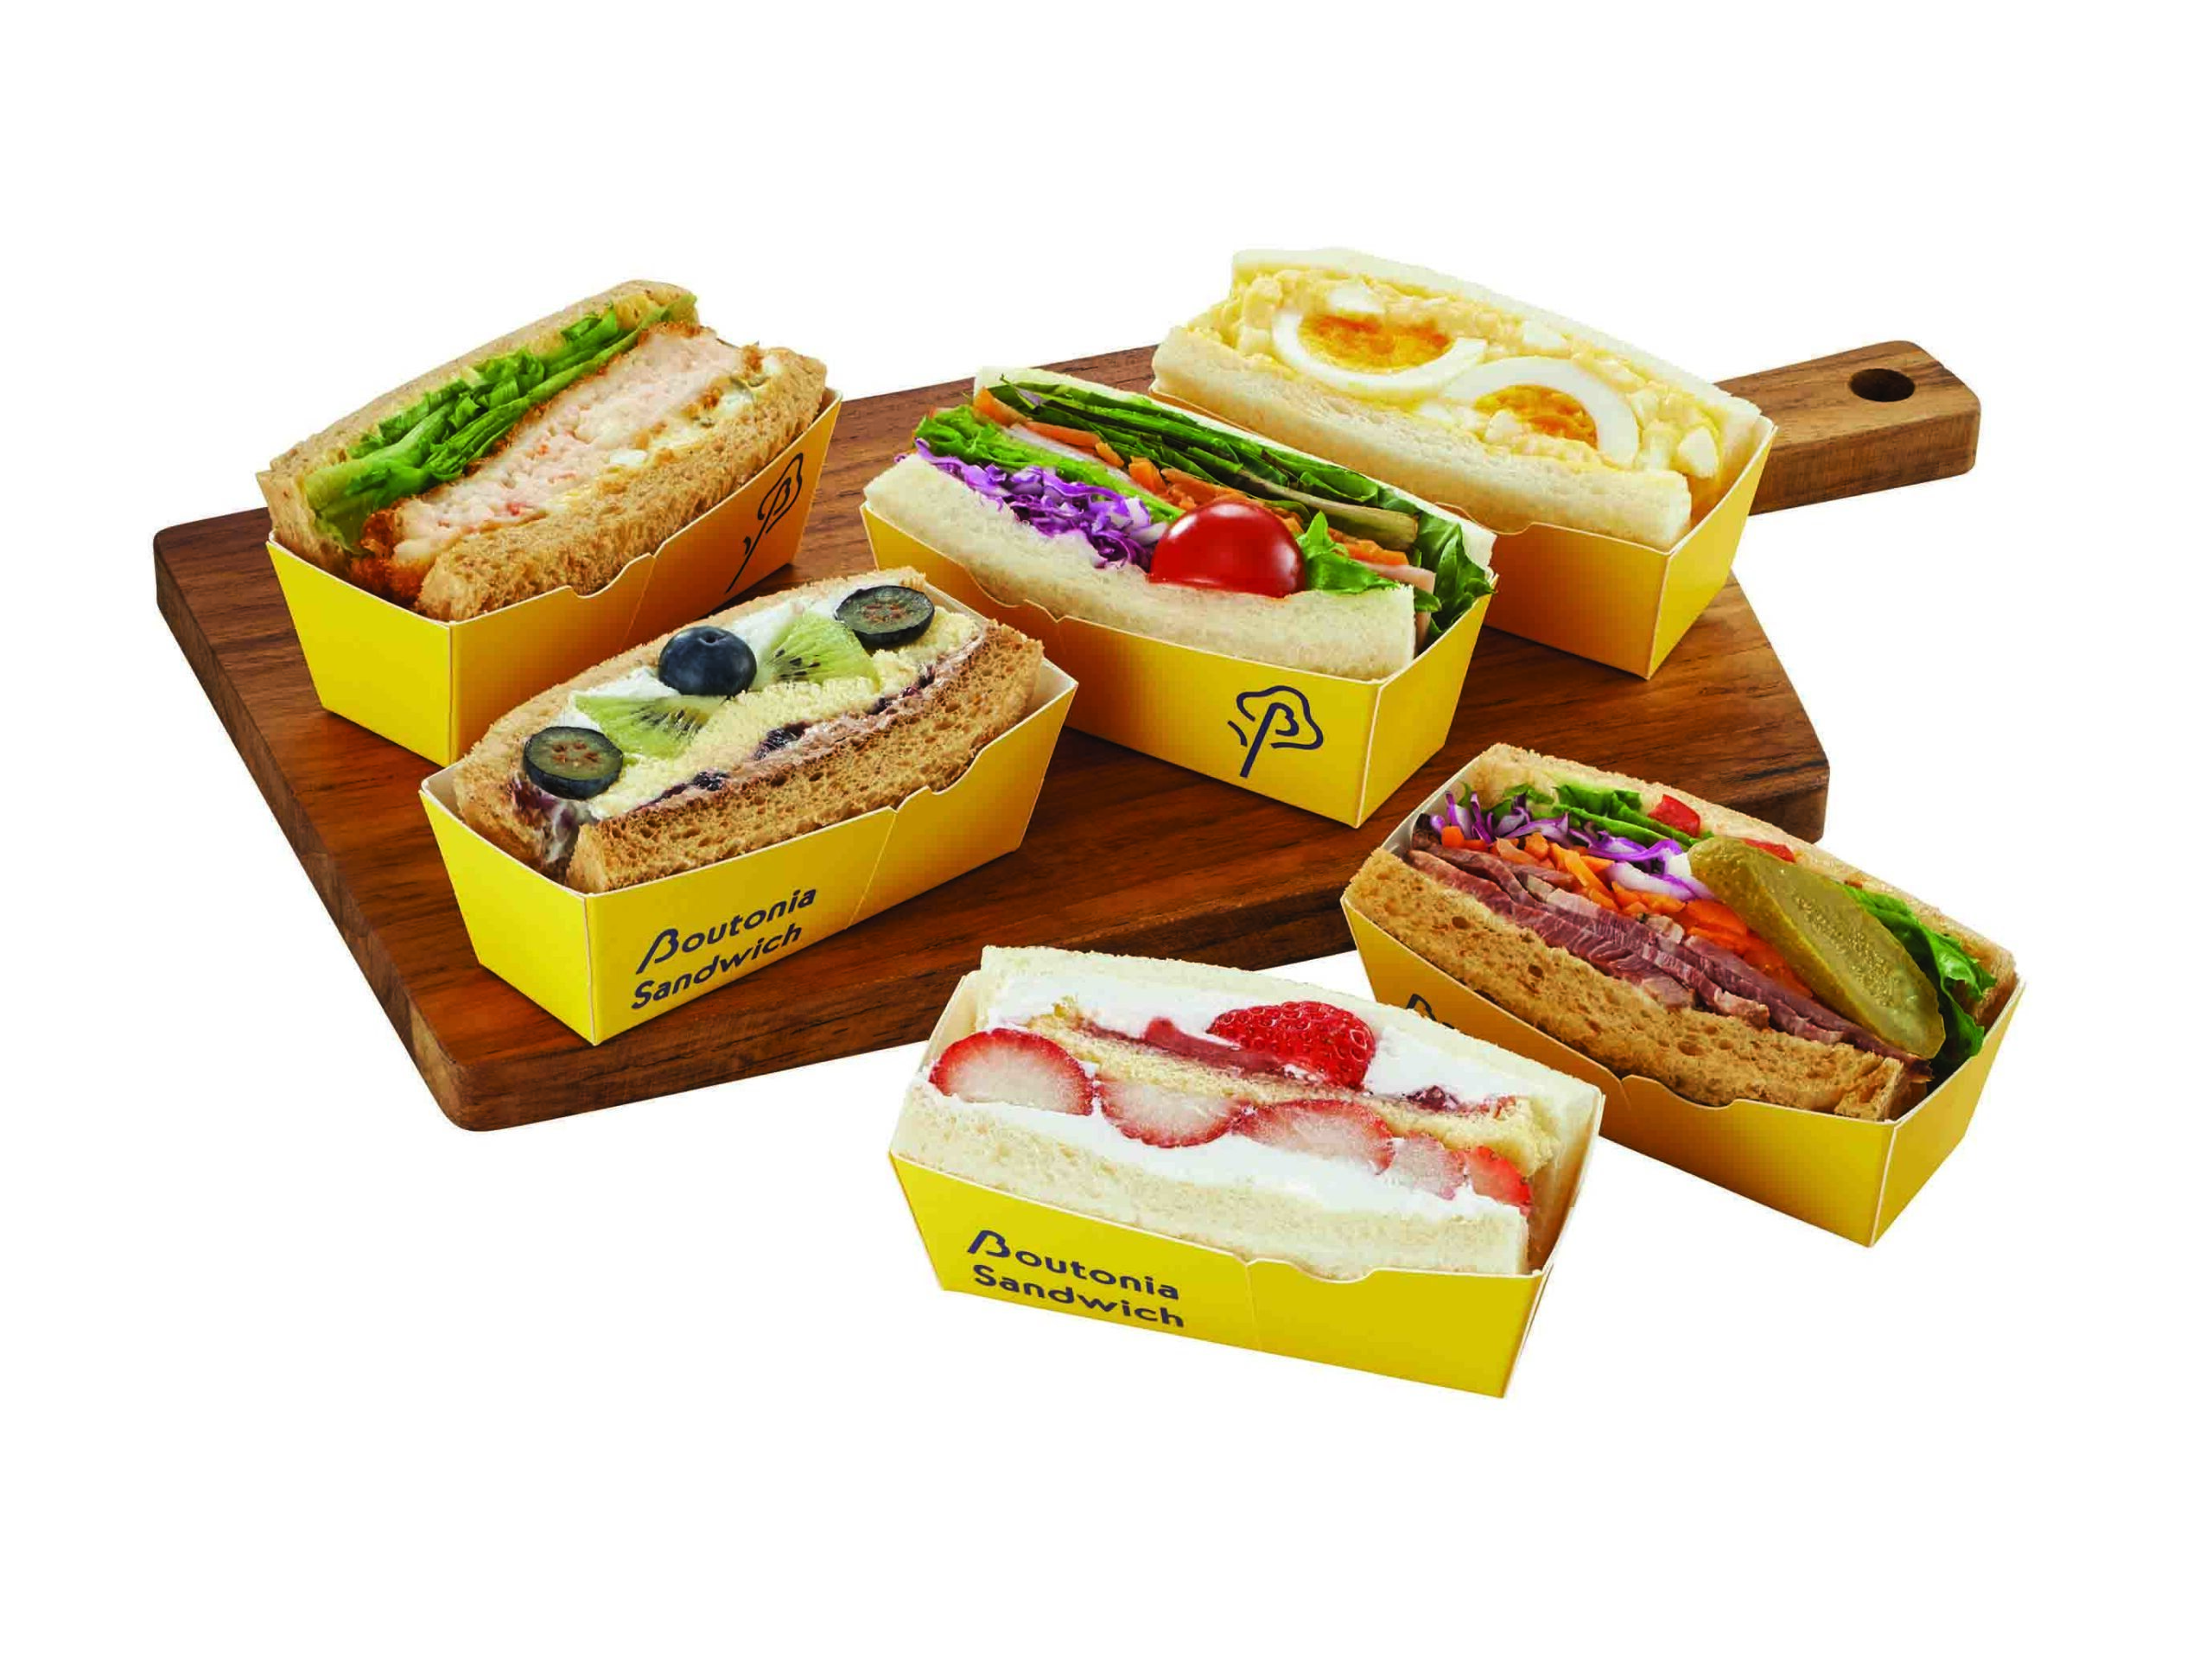 14_03_boutonia-sandwich-4853811